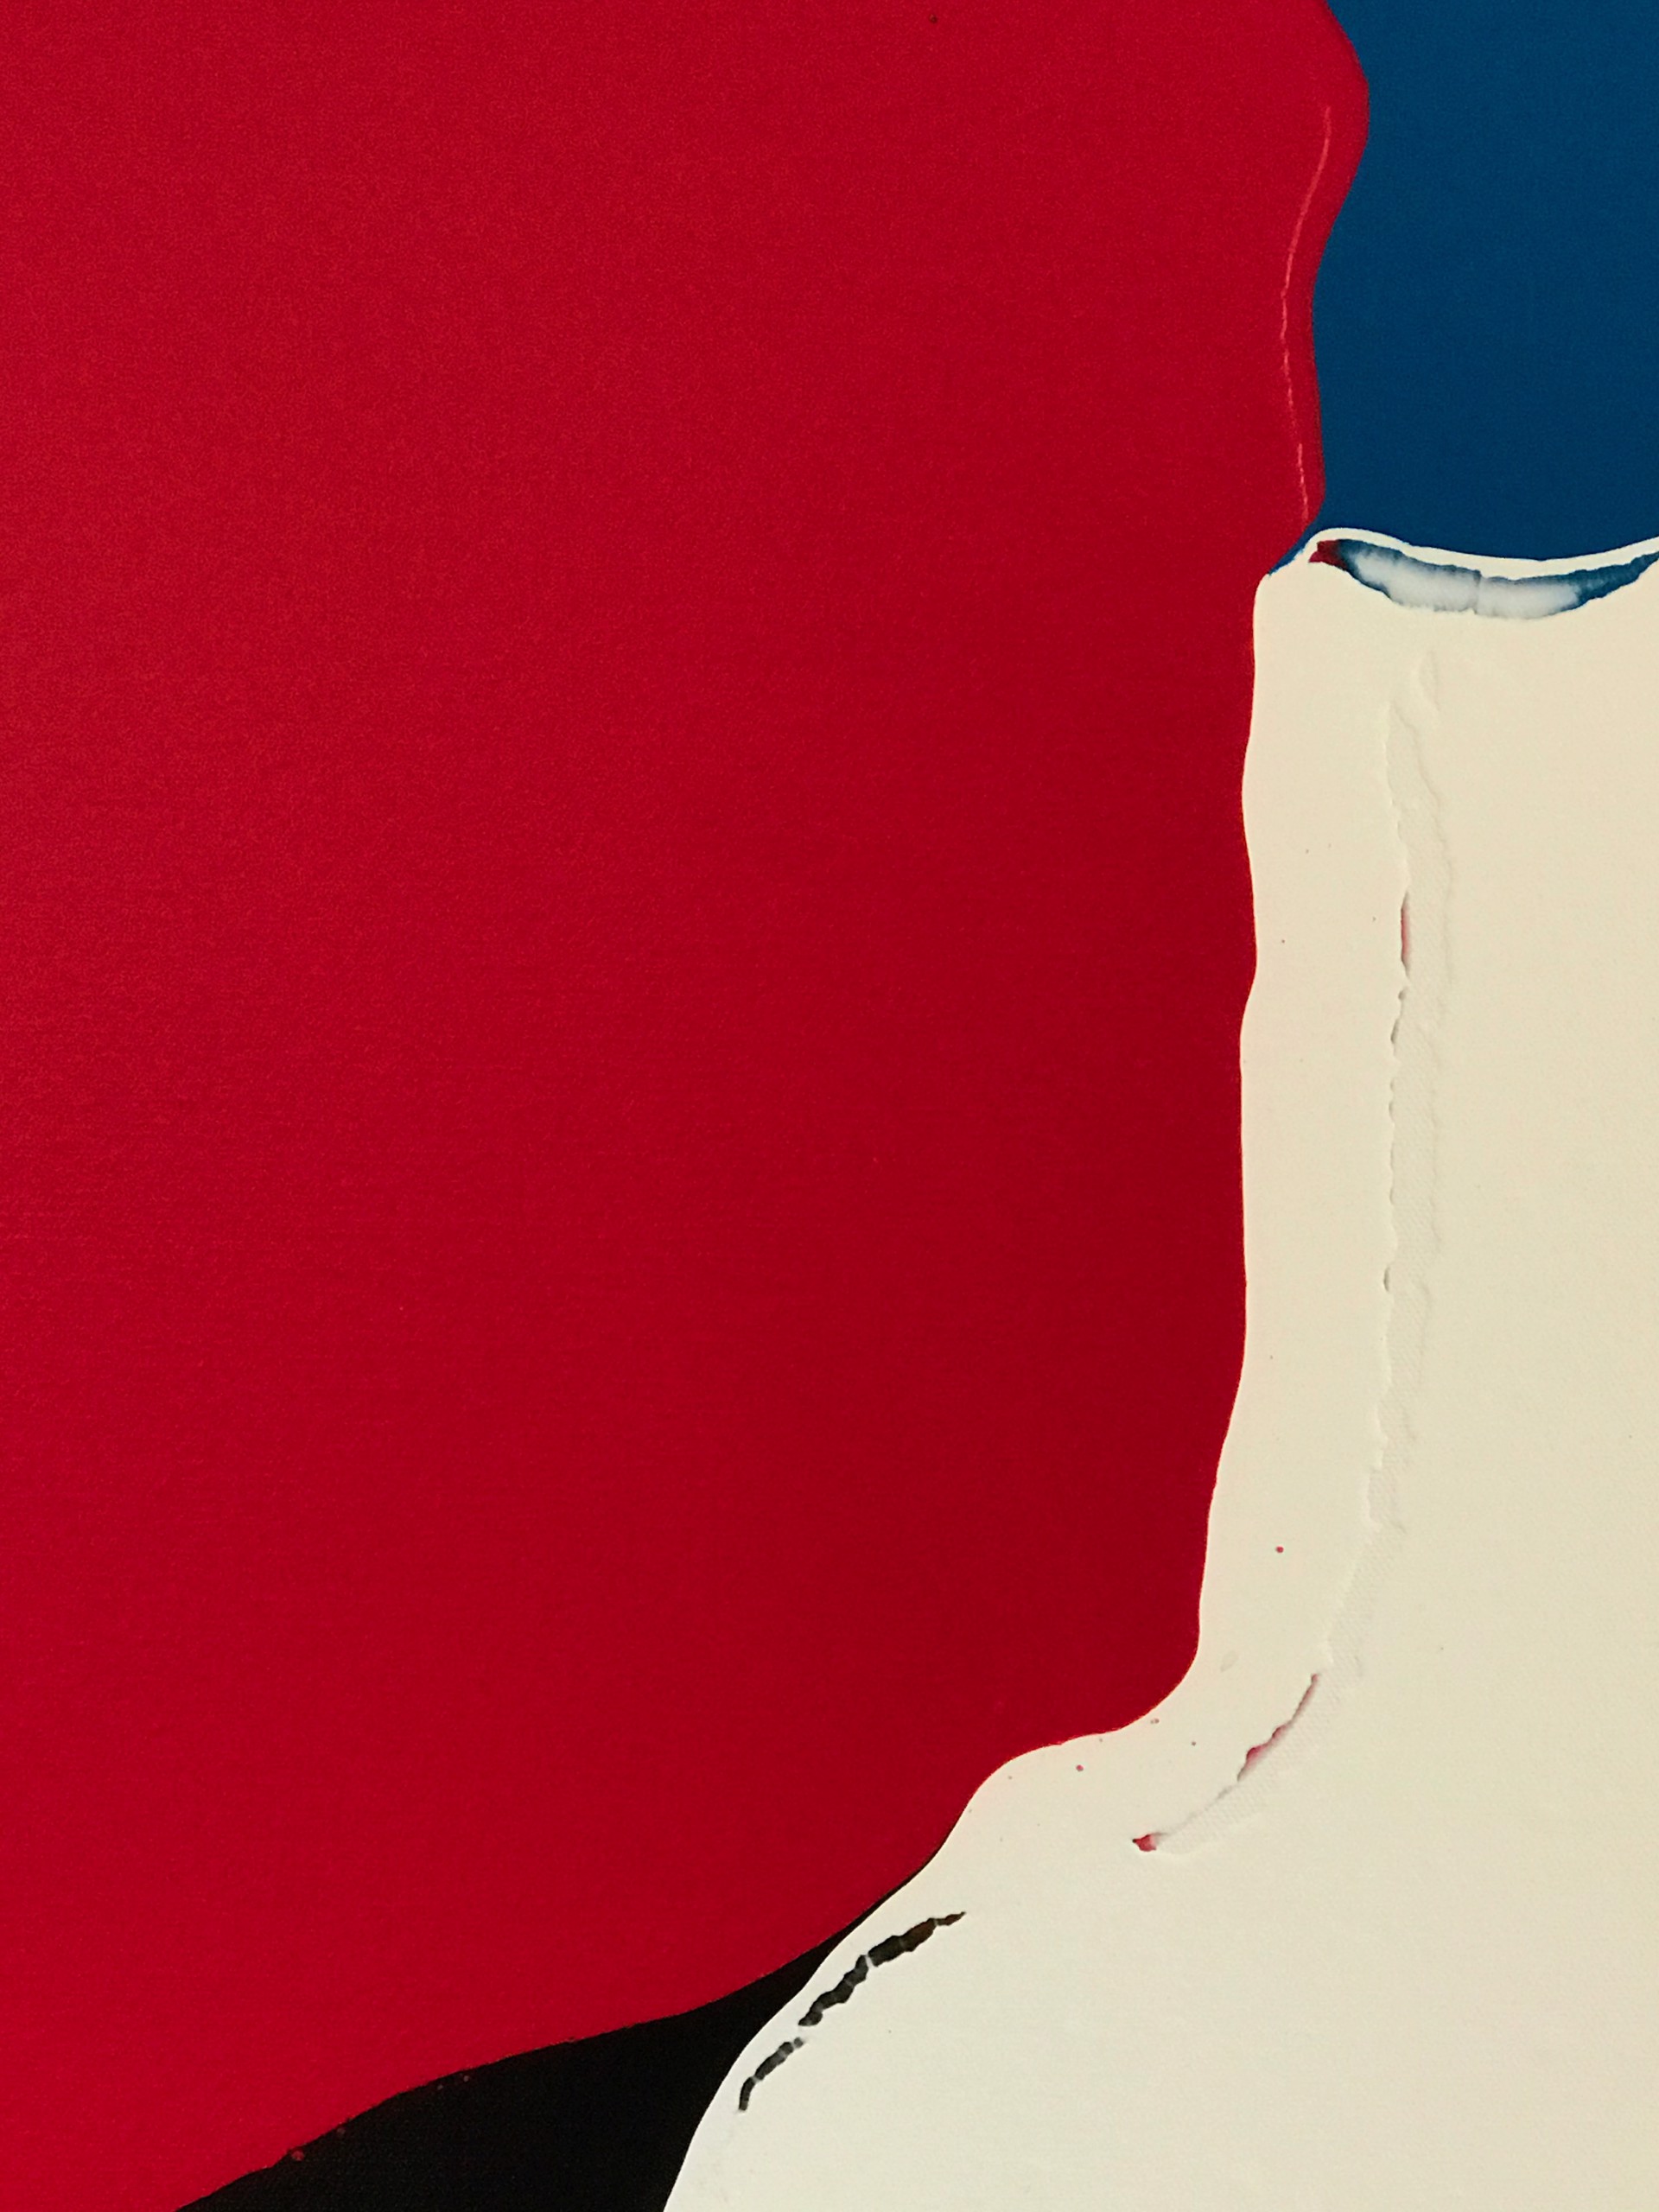 Red Gap by Glenn Green